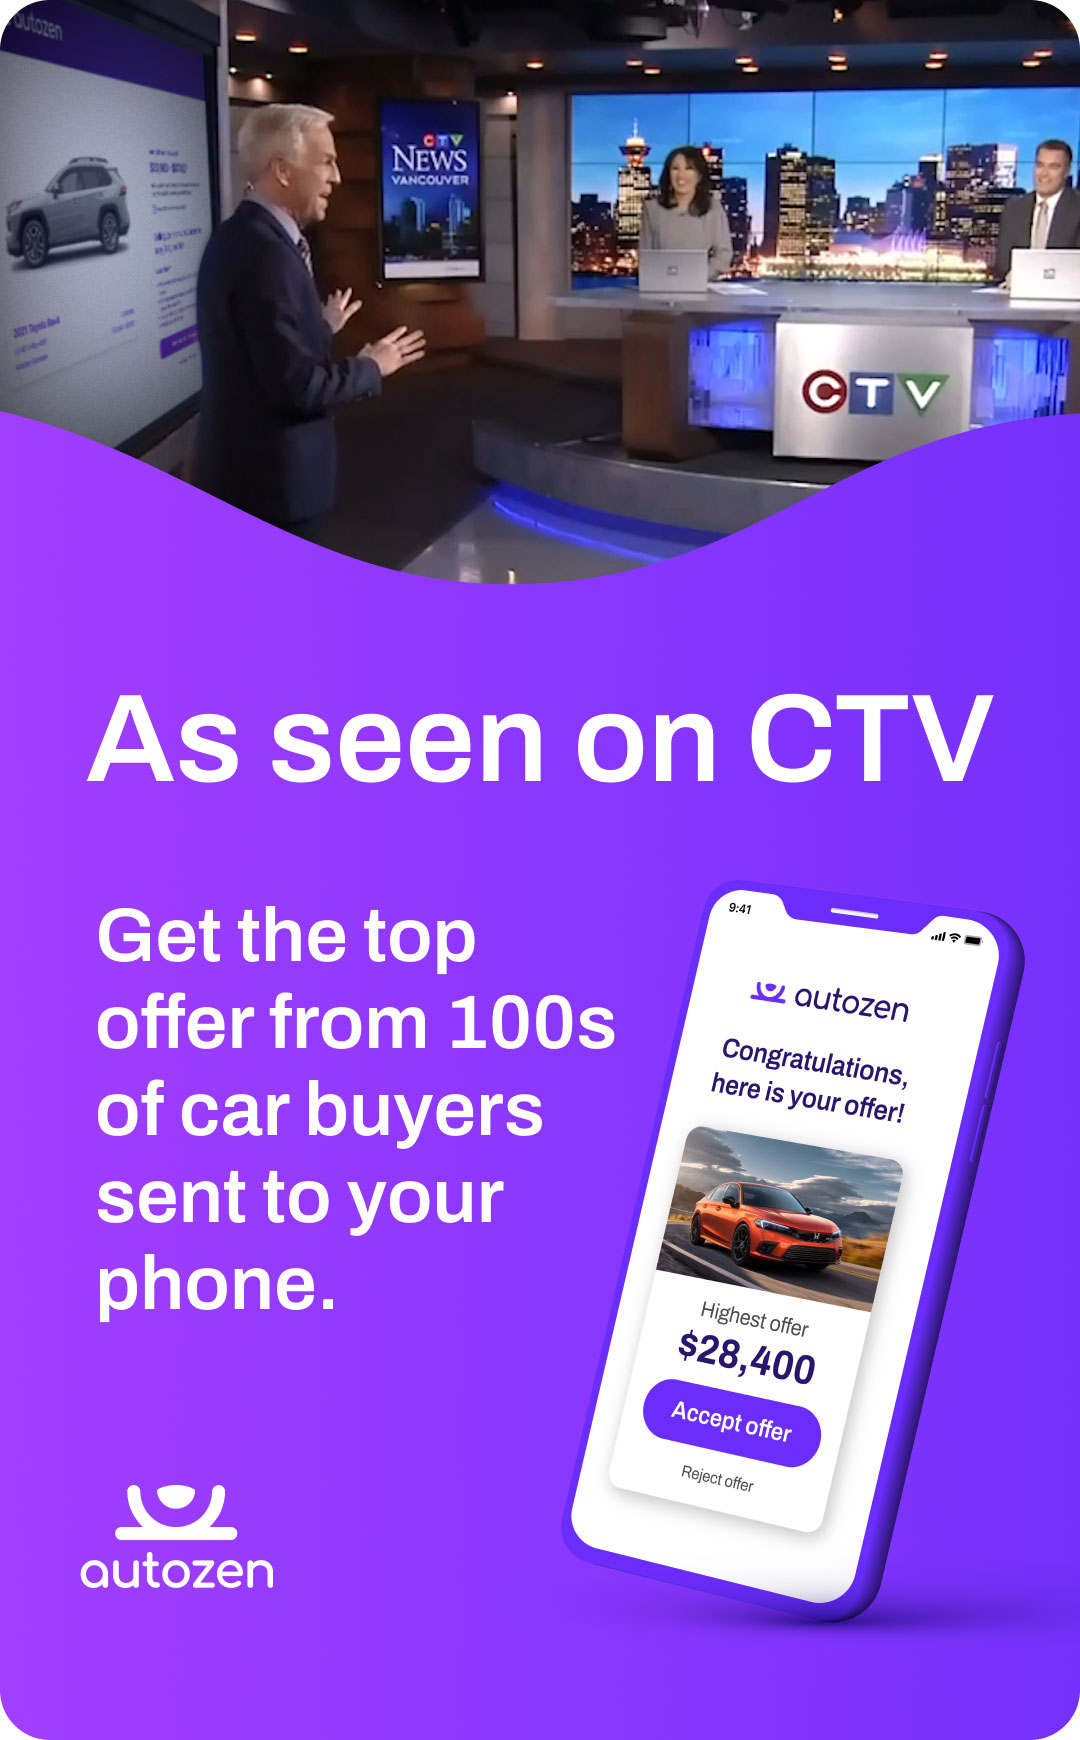 Autozen - as seen on CTV